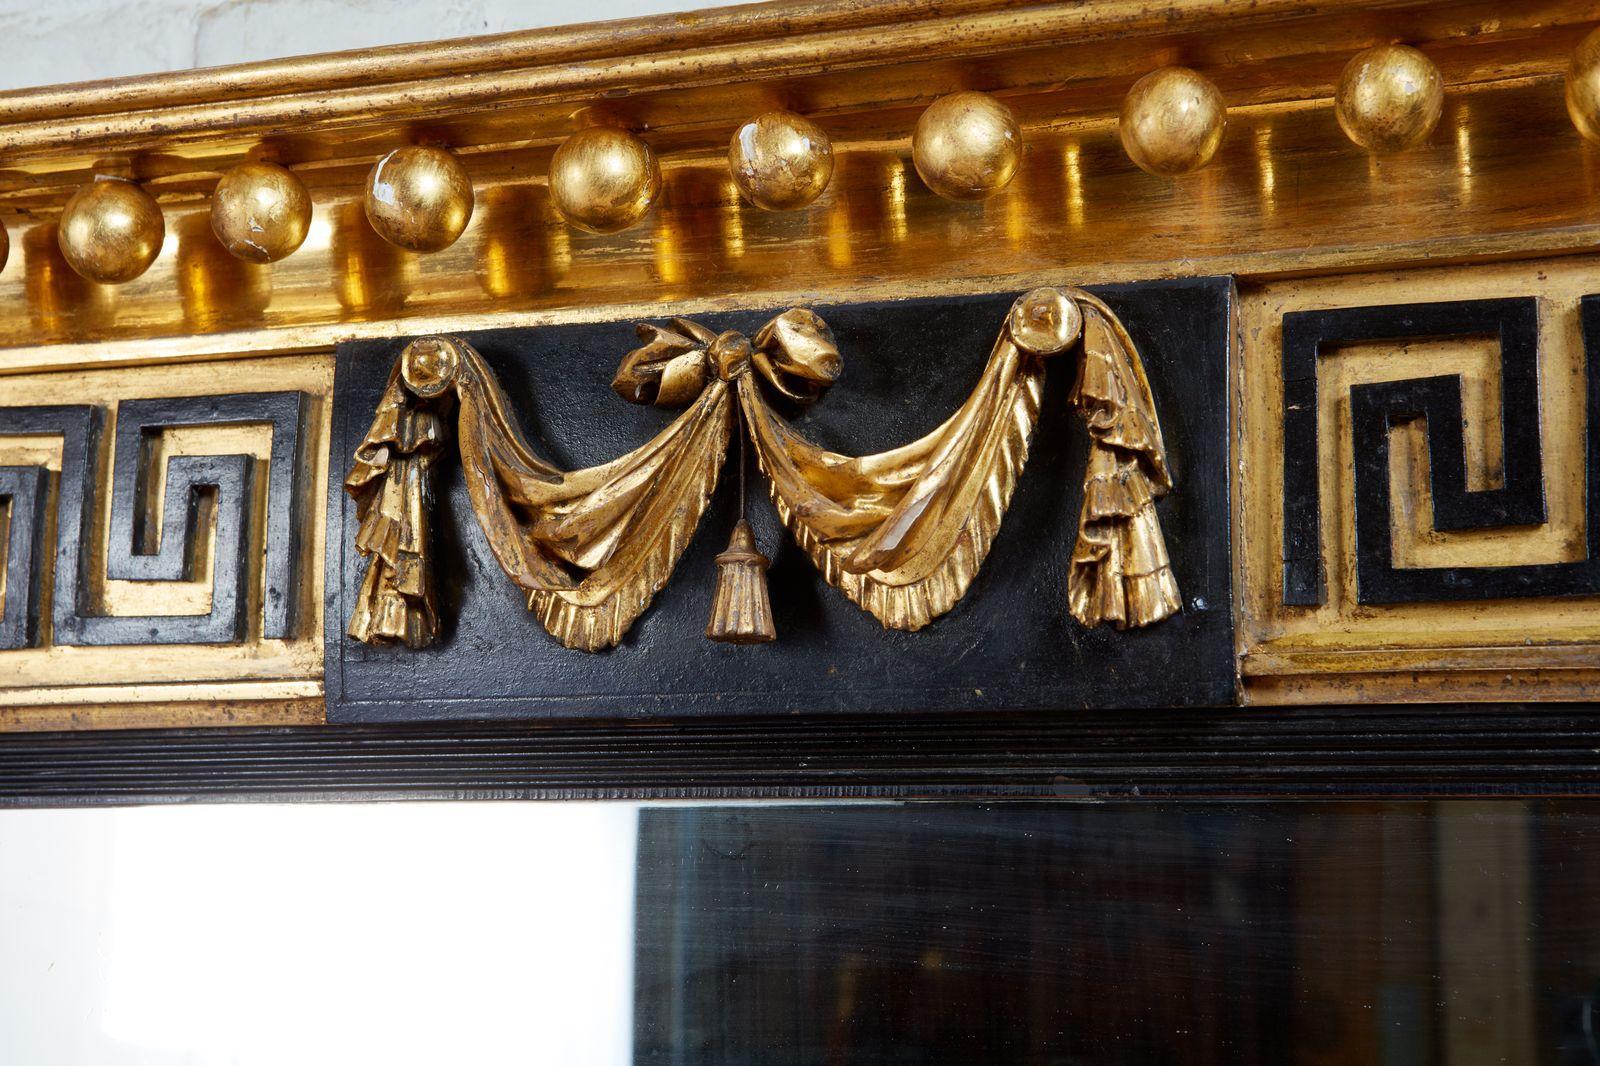 Feine frühe 19. Jahrhundert Englisch vergoldet und ebonisiert Holz dreifache Platte overmantel Spiegel, der gestufte Giebel mit hell brüniert vergoldeten Kugeln, die mittlere Tafel mit swagged Drapierungen durch ebonisierte griechischen Schlüssel